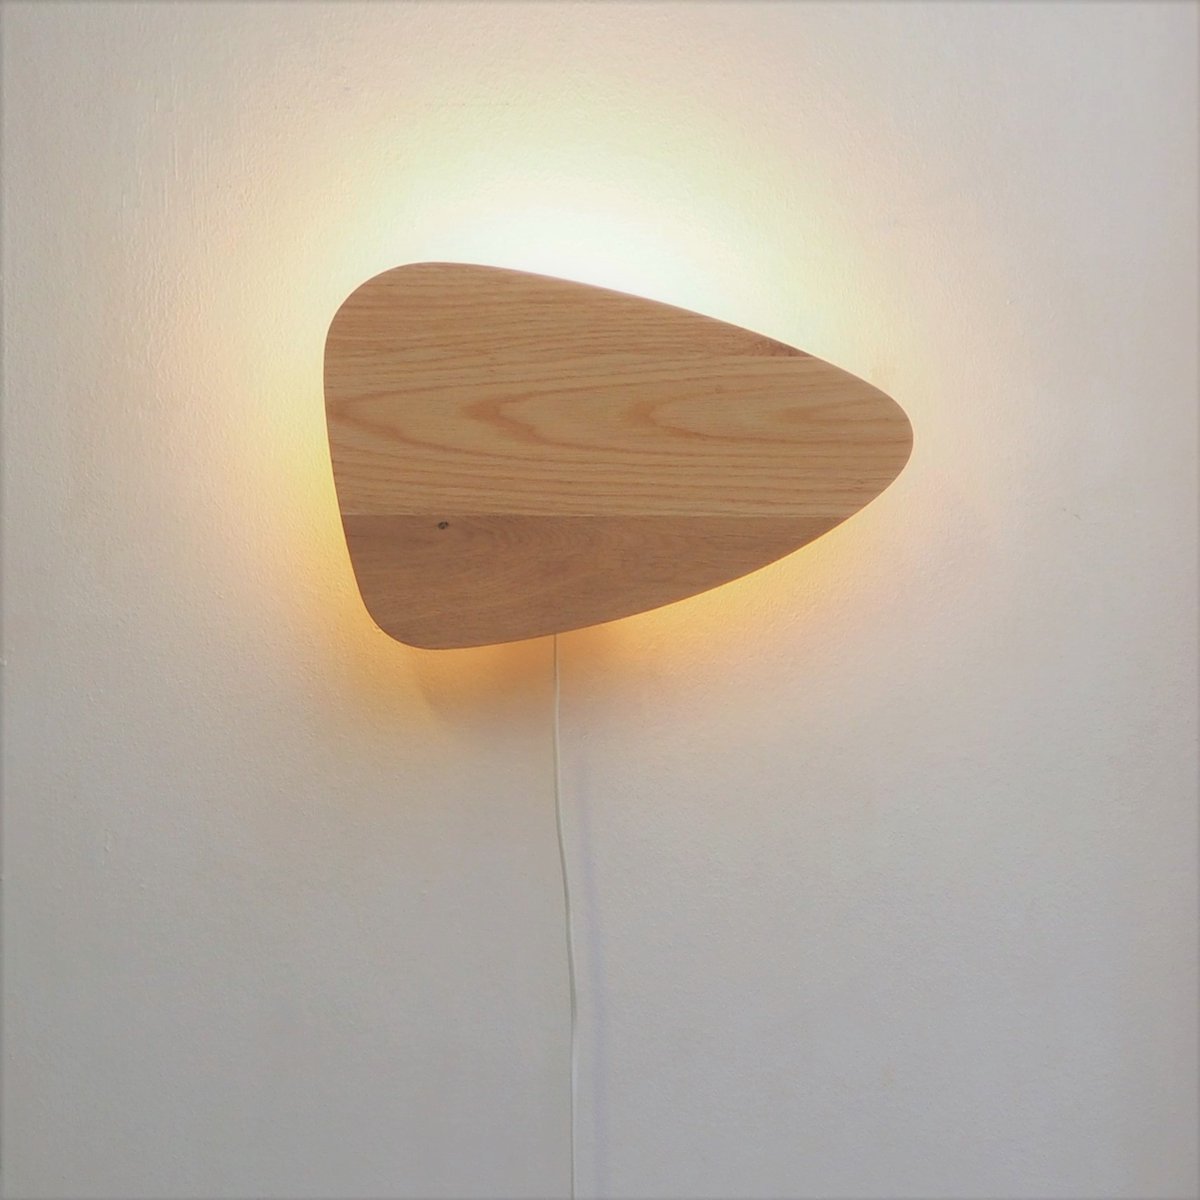 Studio Prêt - Wandlamp - Eiken - Superleuke lamp met superprettig warm licht